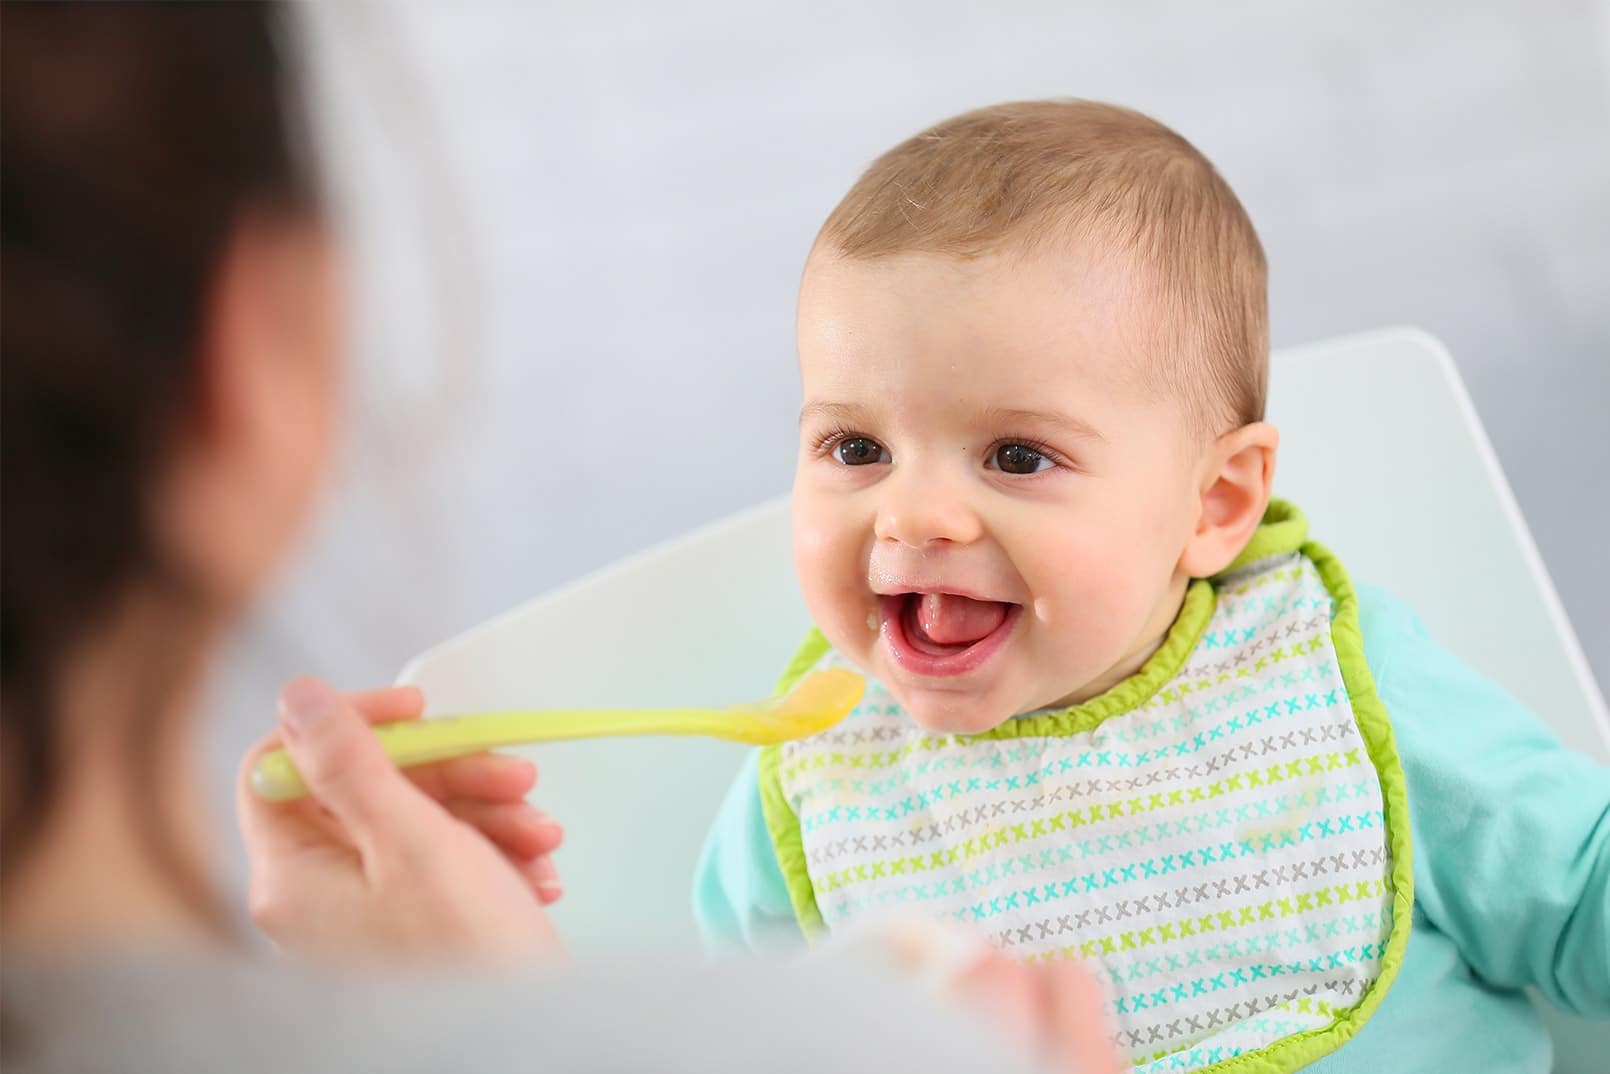 Comment nourrir son bébé, après une chirurgie des fentes labio-palatine ? | Centre Fentes Palatines